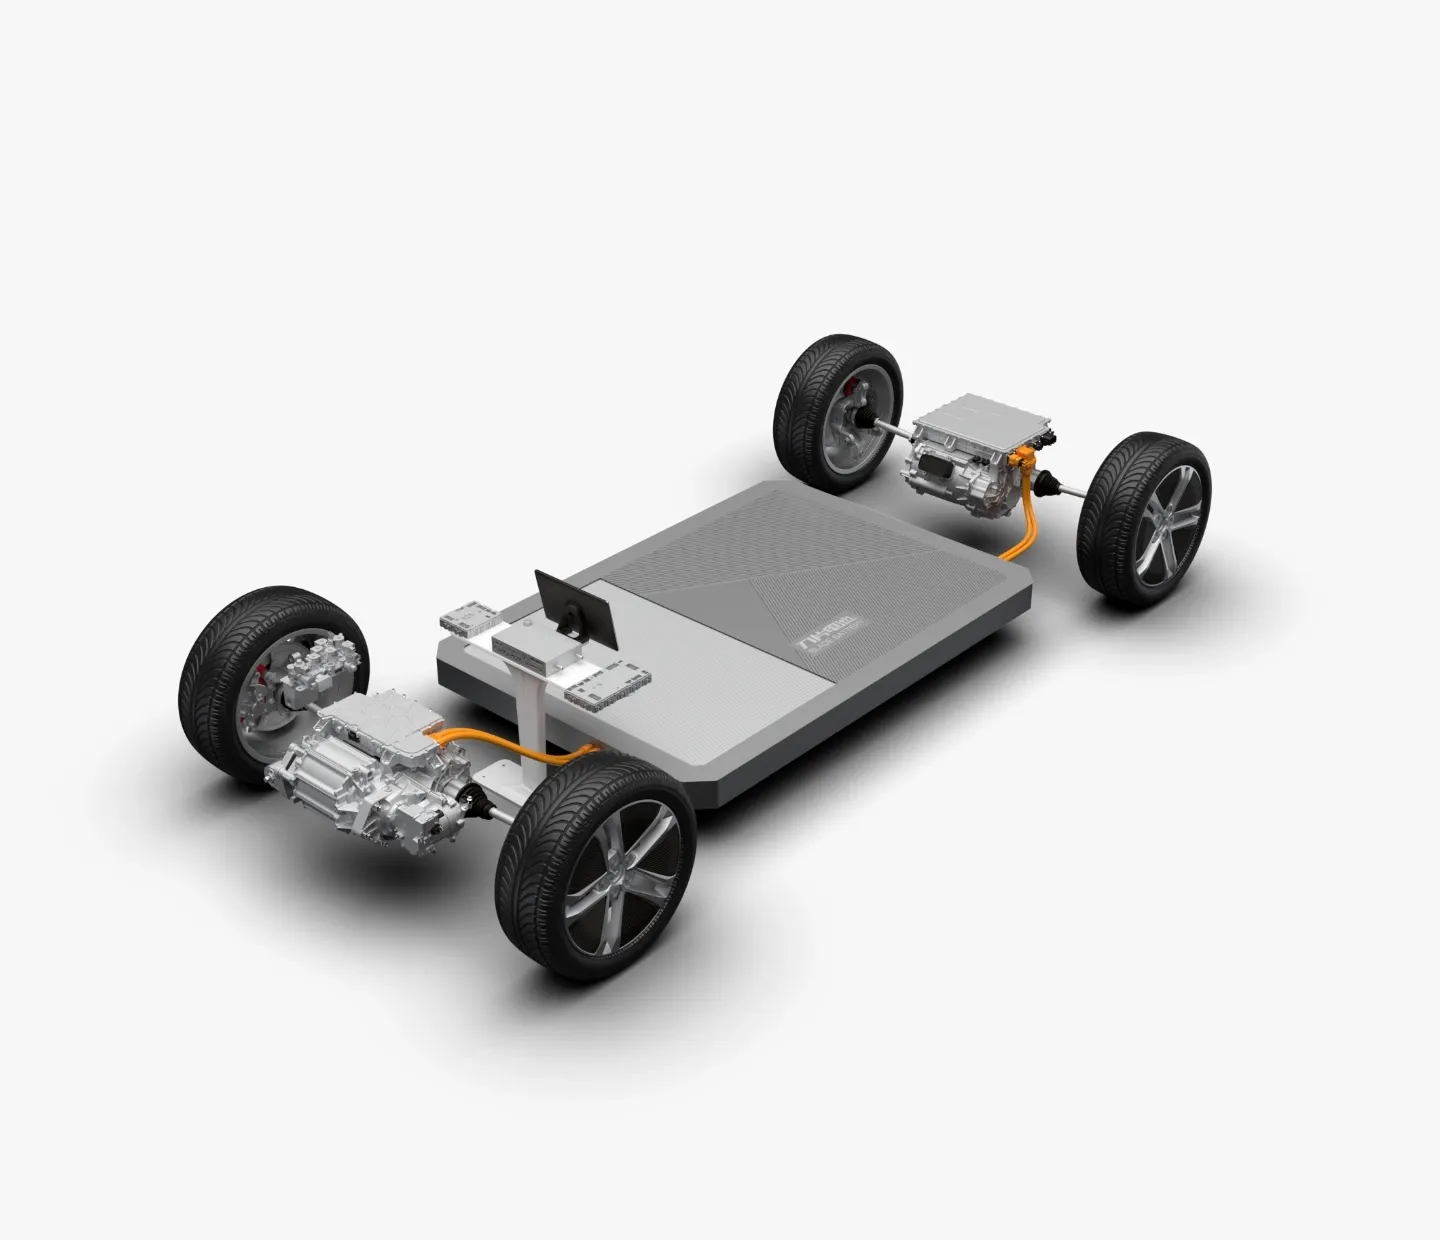 Desenho técnico 3D da plataforma e-platform 3.0 do SUV seguro BYD SEAL U